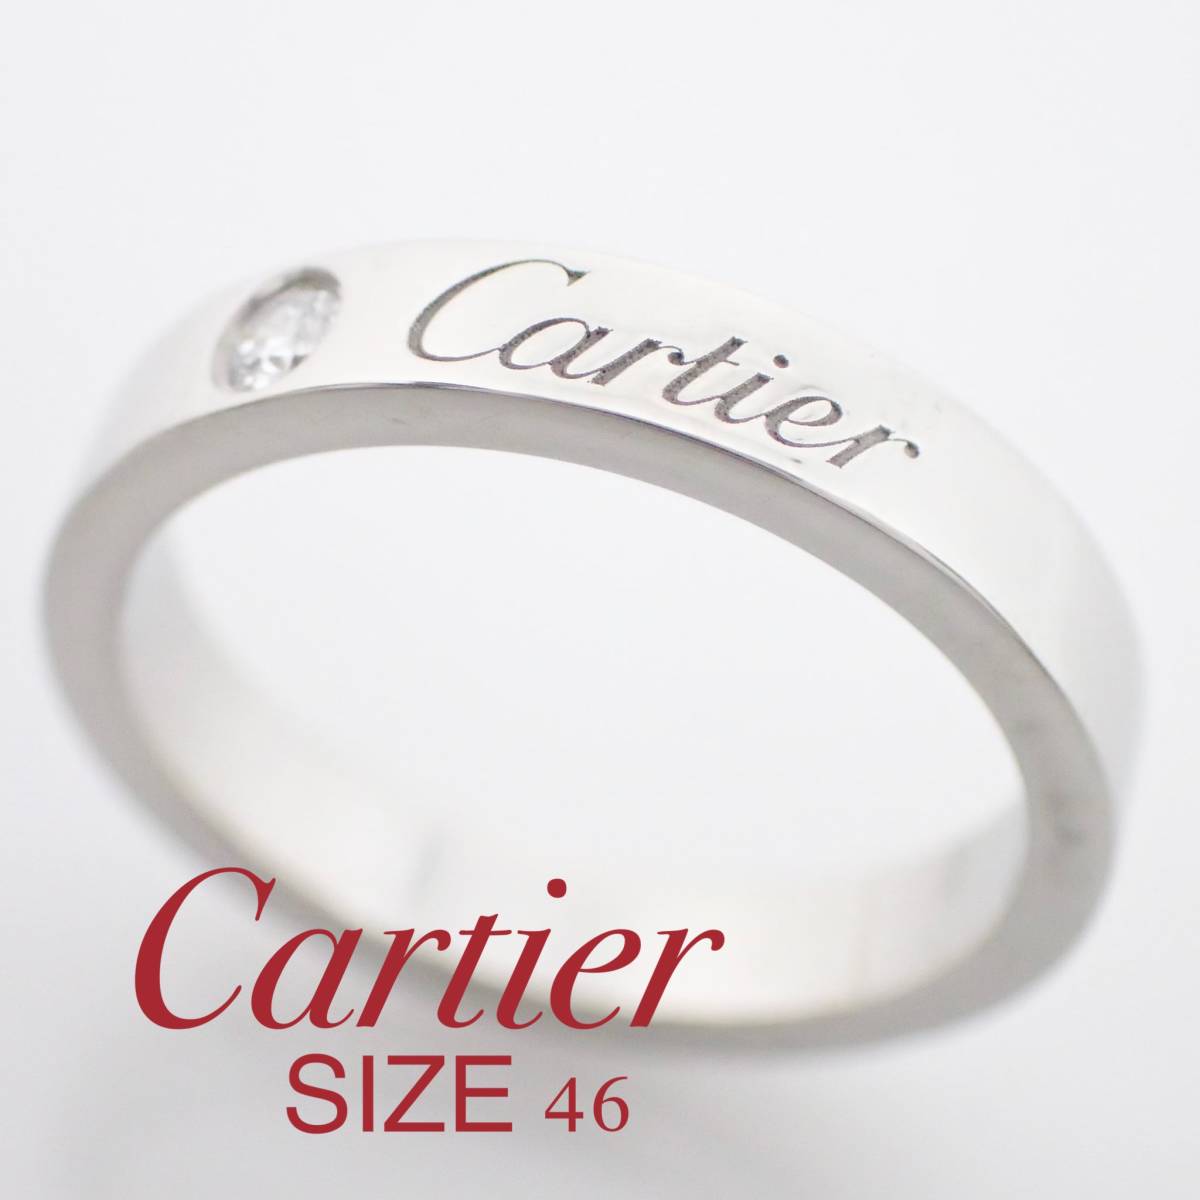  Cartier Cartier Pt950 бриллиант en серый bdo кольцо 46 номер #46 письменная гарантия гарантийная карточка платина 